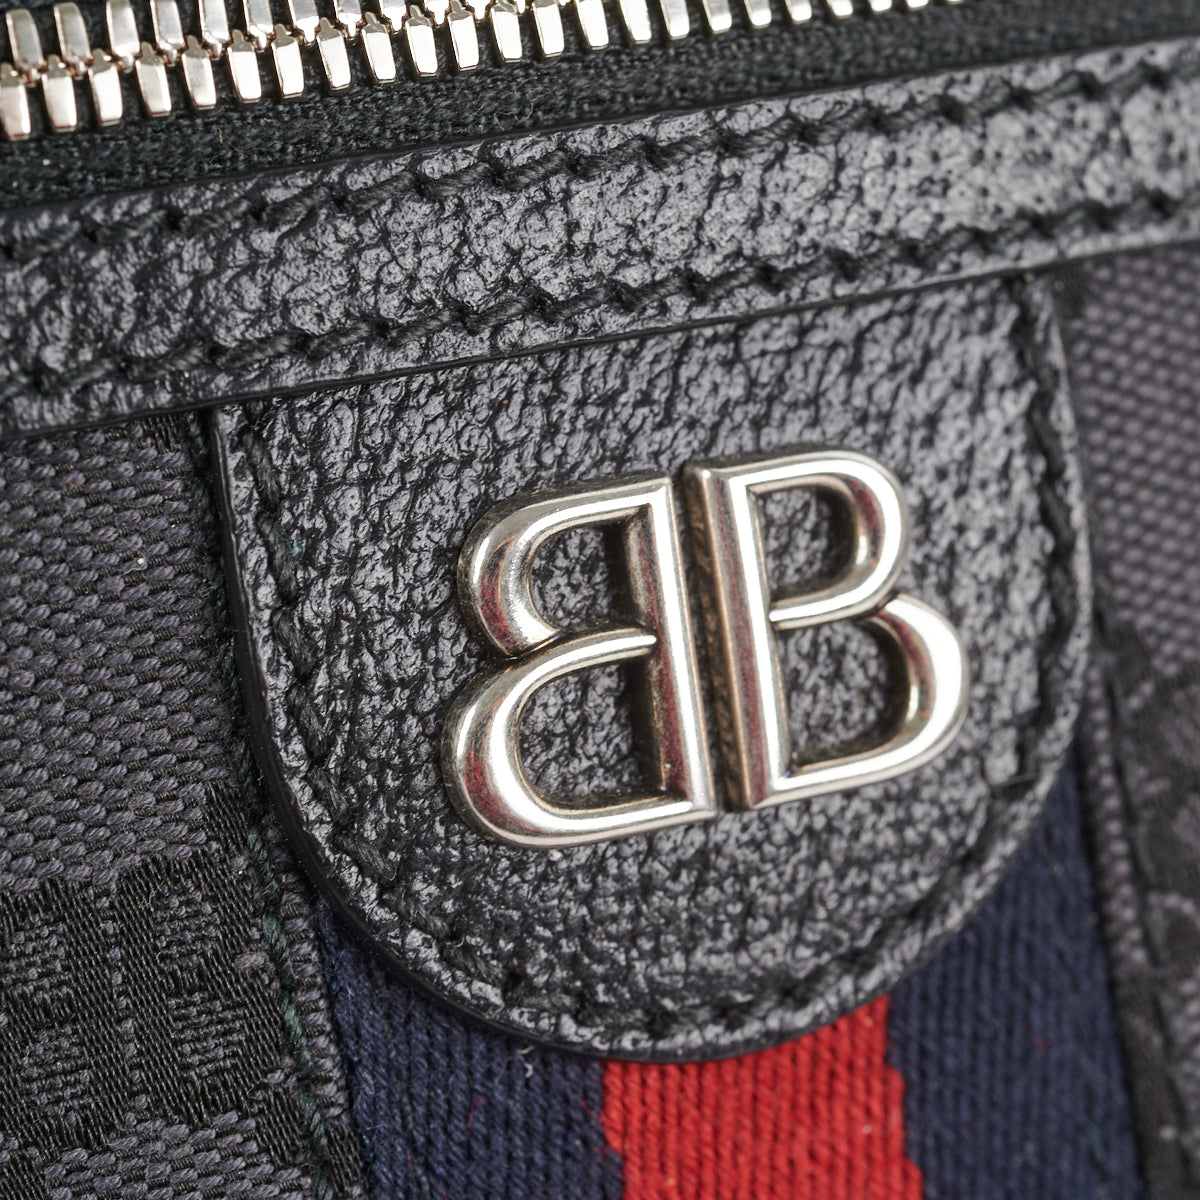 Balenciaga Bags - Find your next Balenciaga Bag at Collector's Cage –  Collectors cage